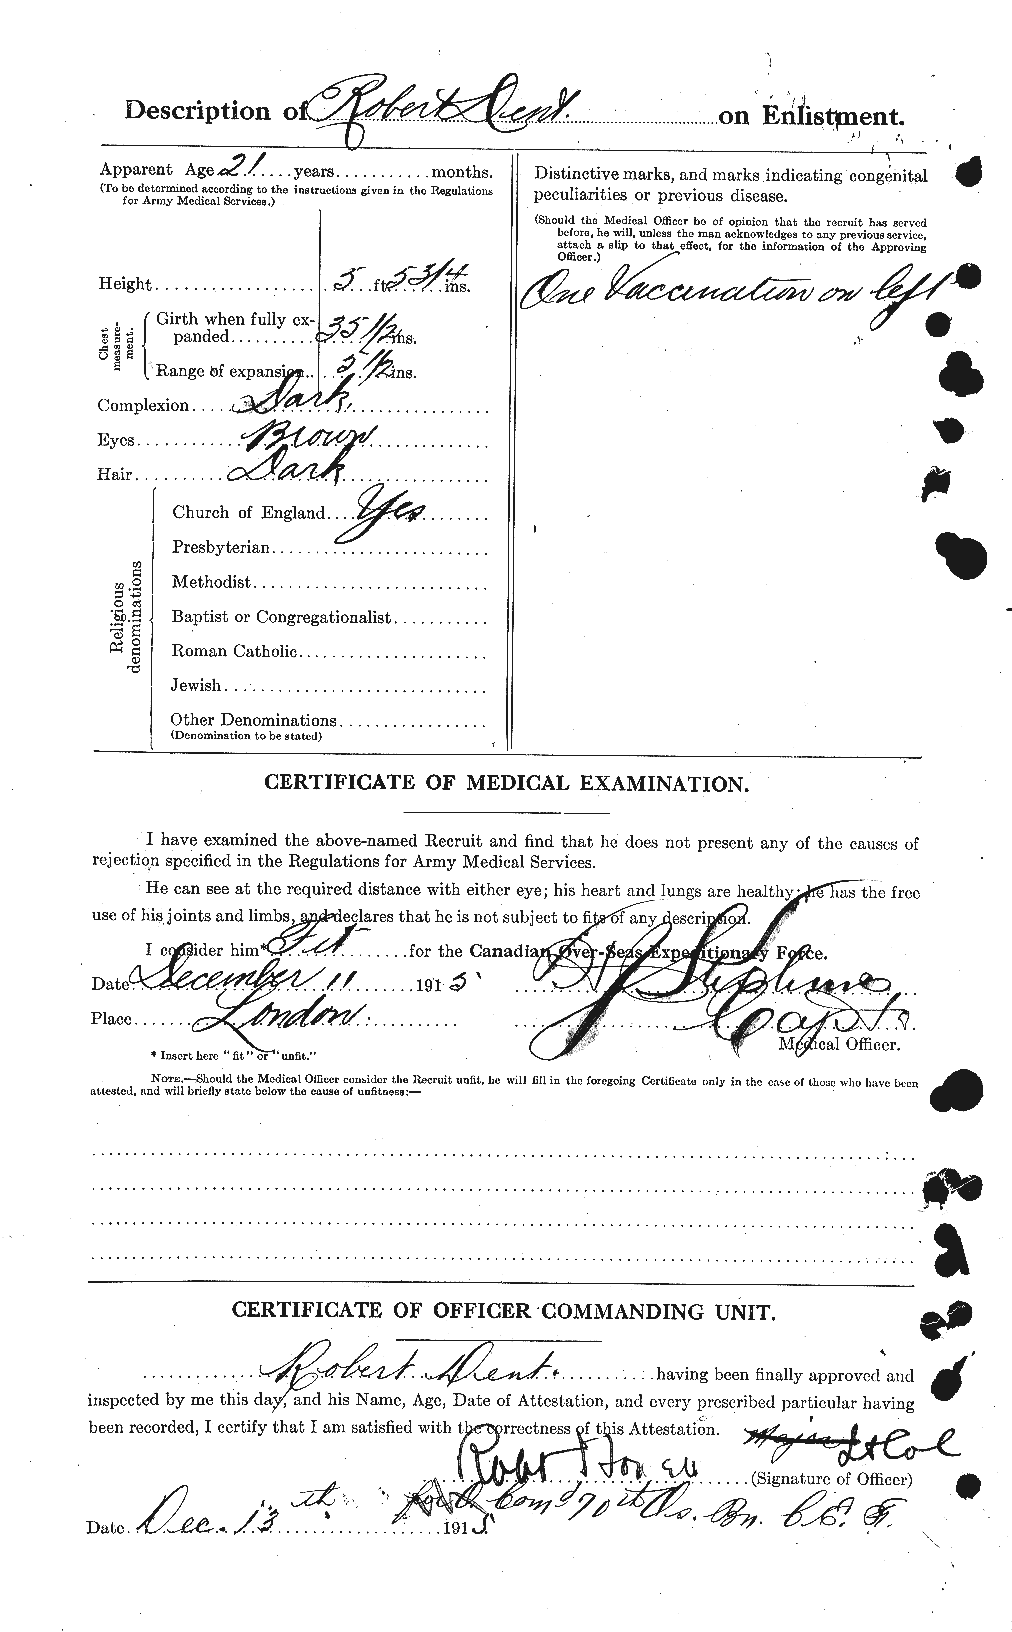 Dossiers du Personnel de la Première Guerre mondiale - CEC 286498b